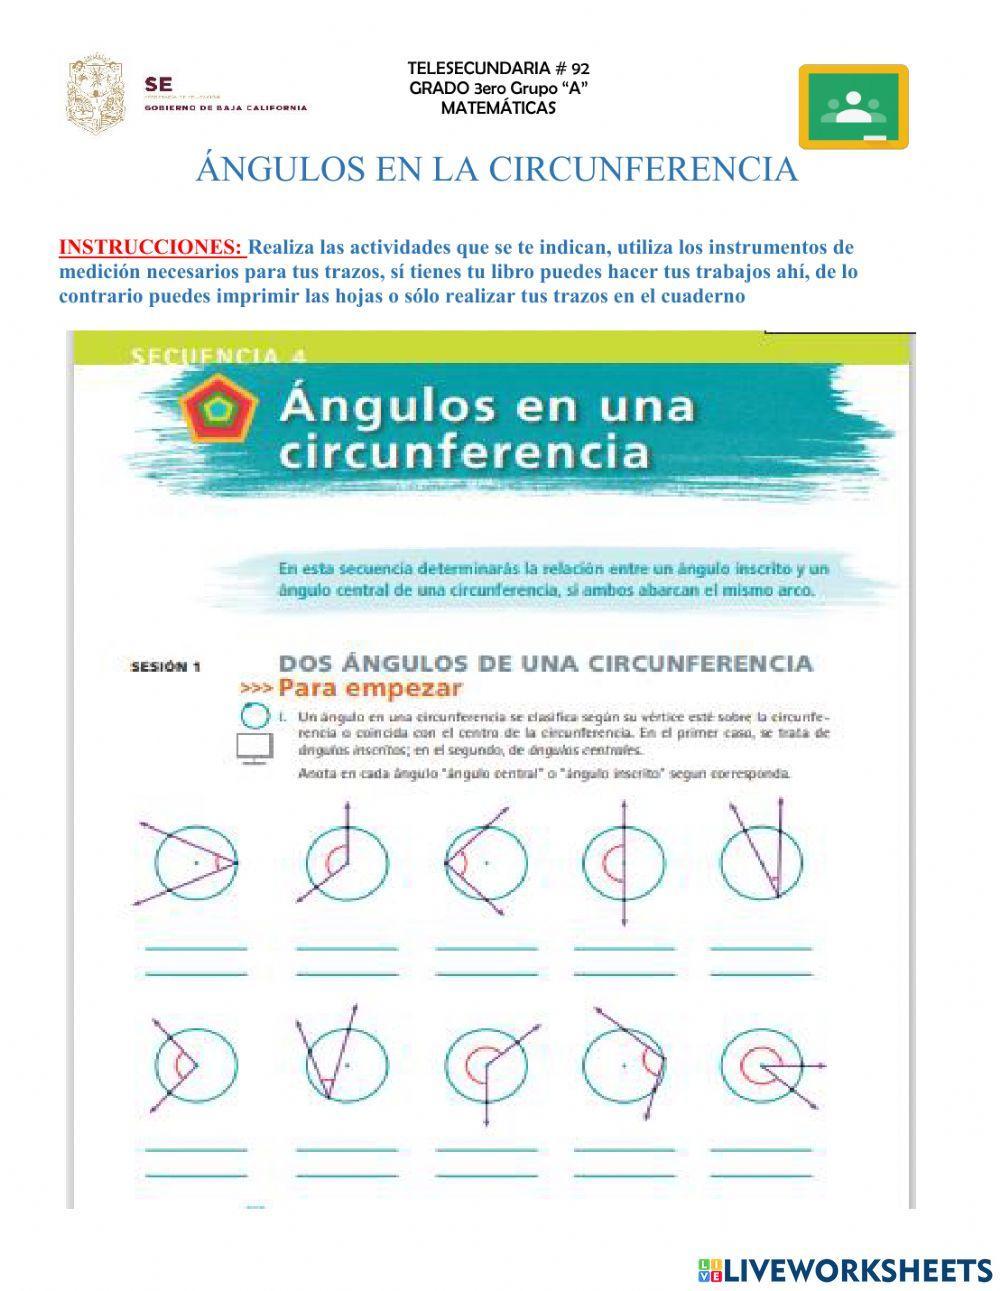 Angulos en la circunferencia